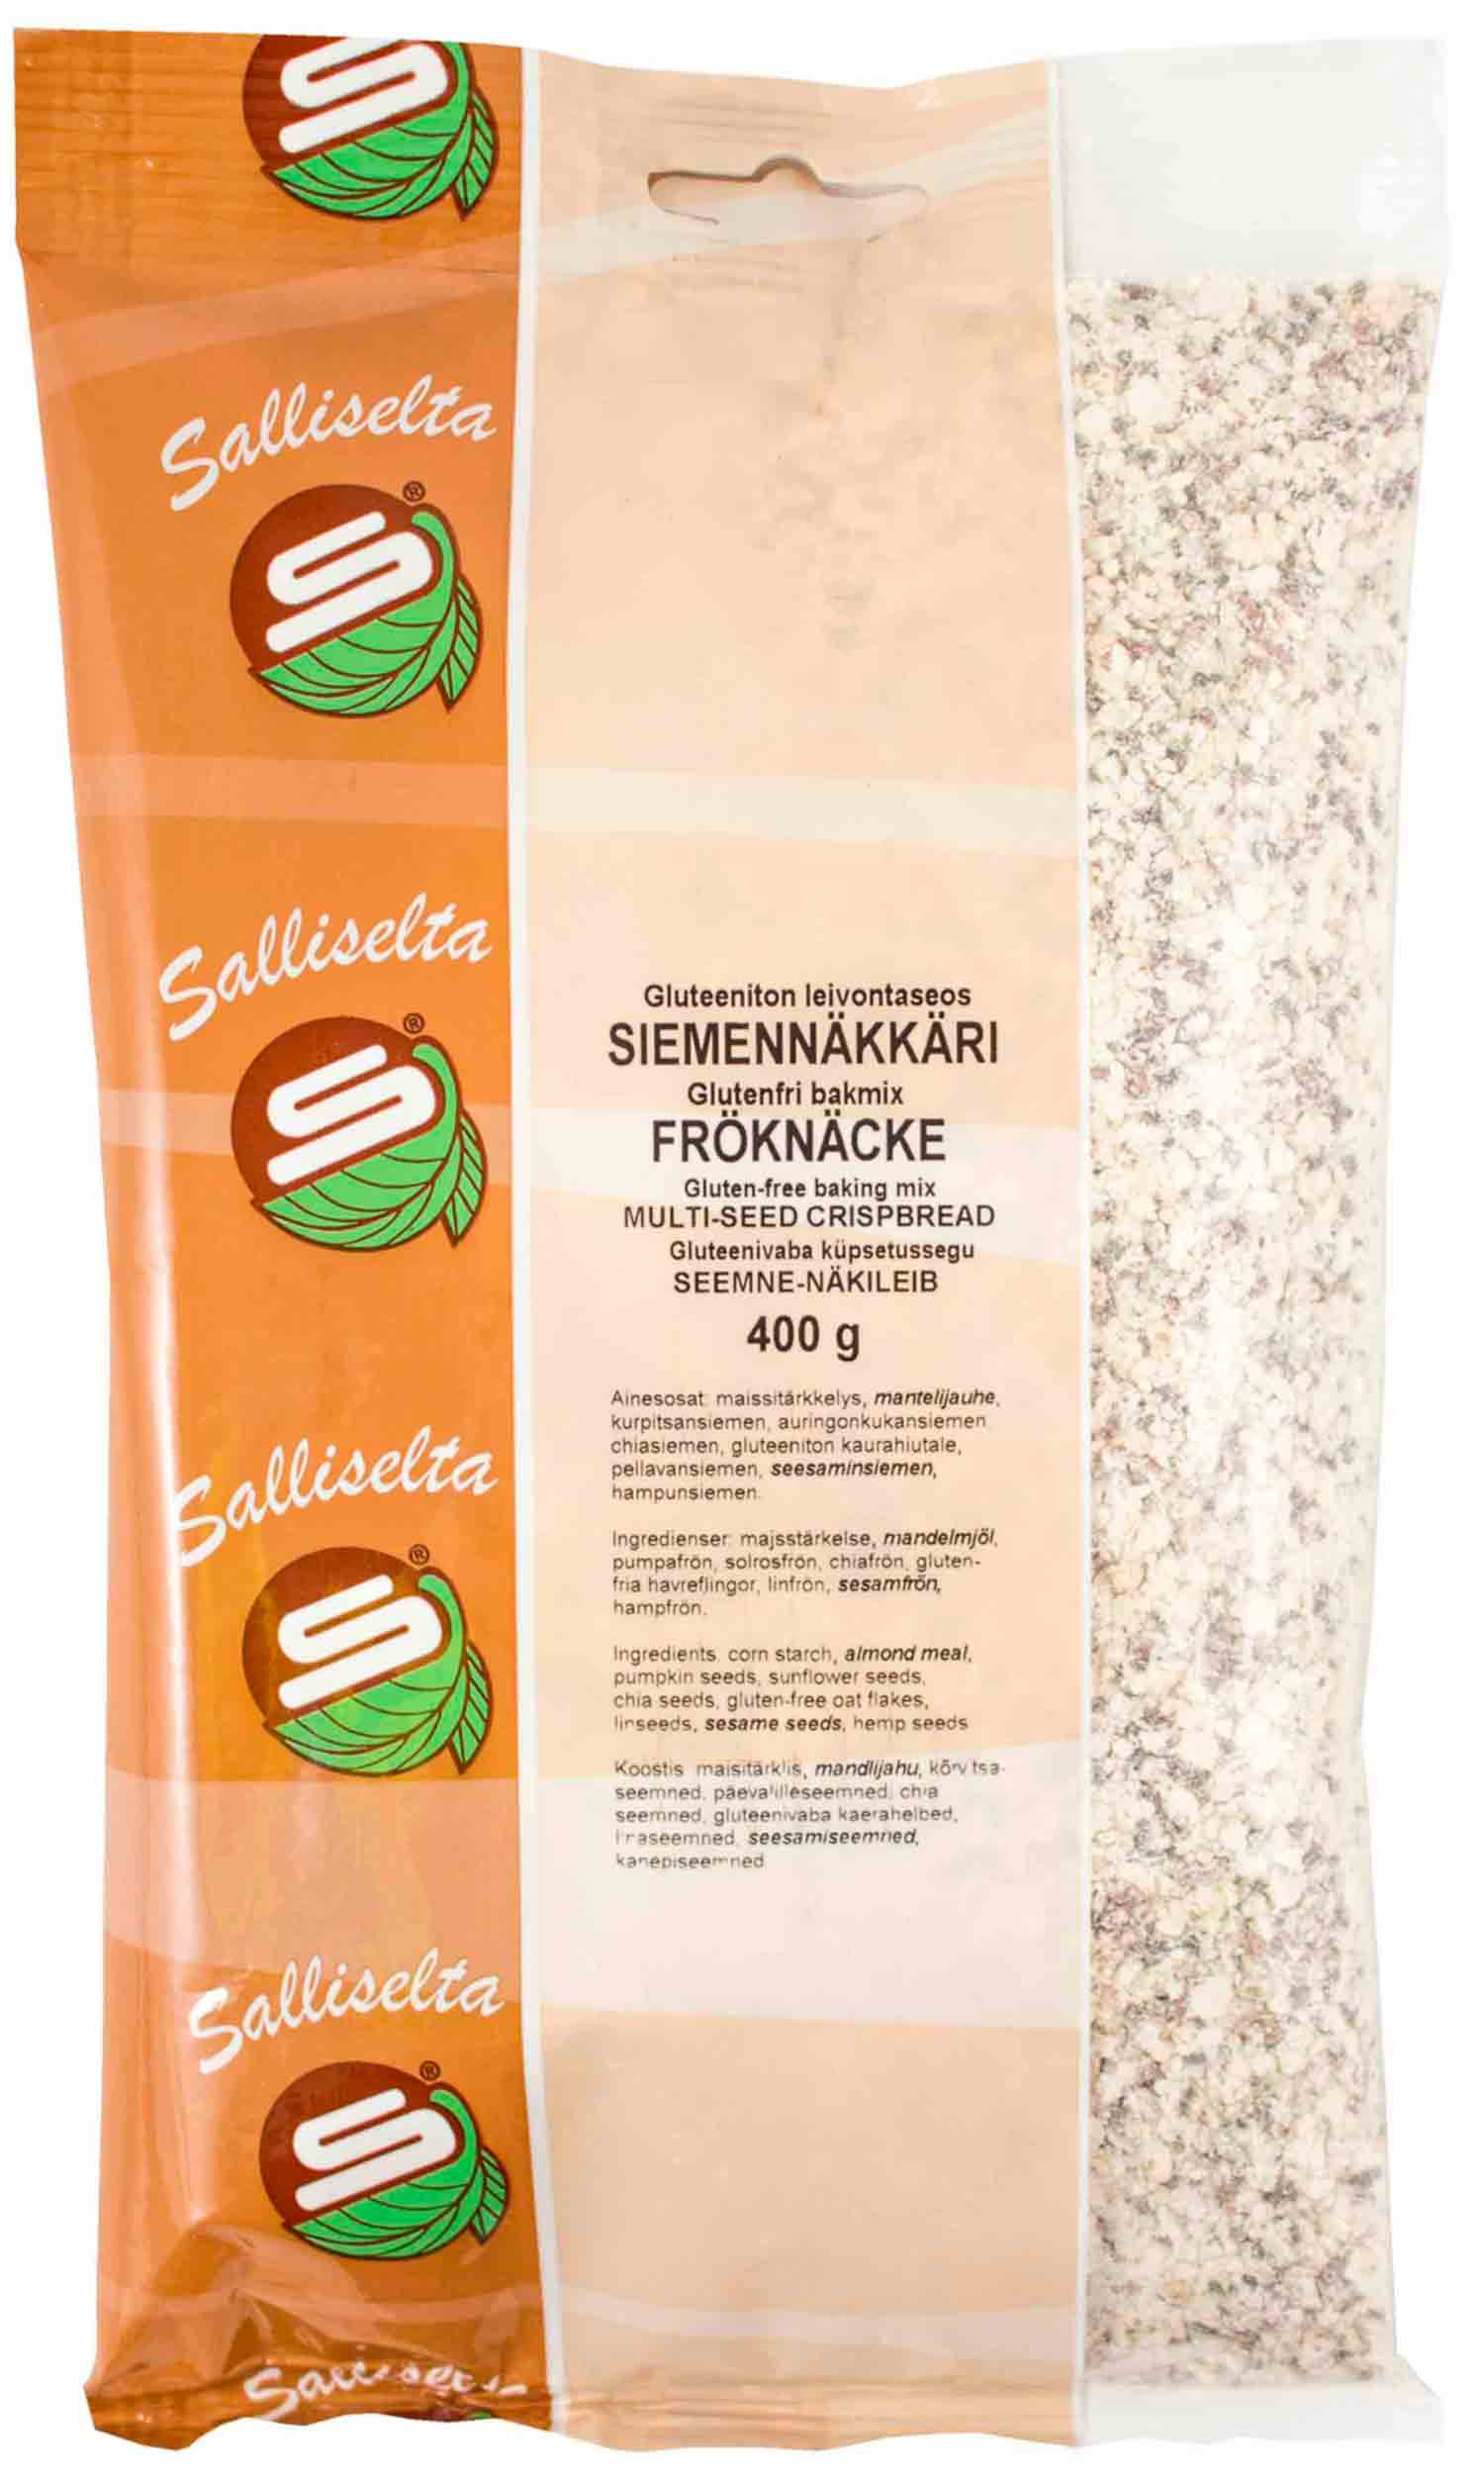 Seemne-näkileib - gluteenivaba küpsetussegu 400 g